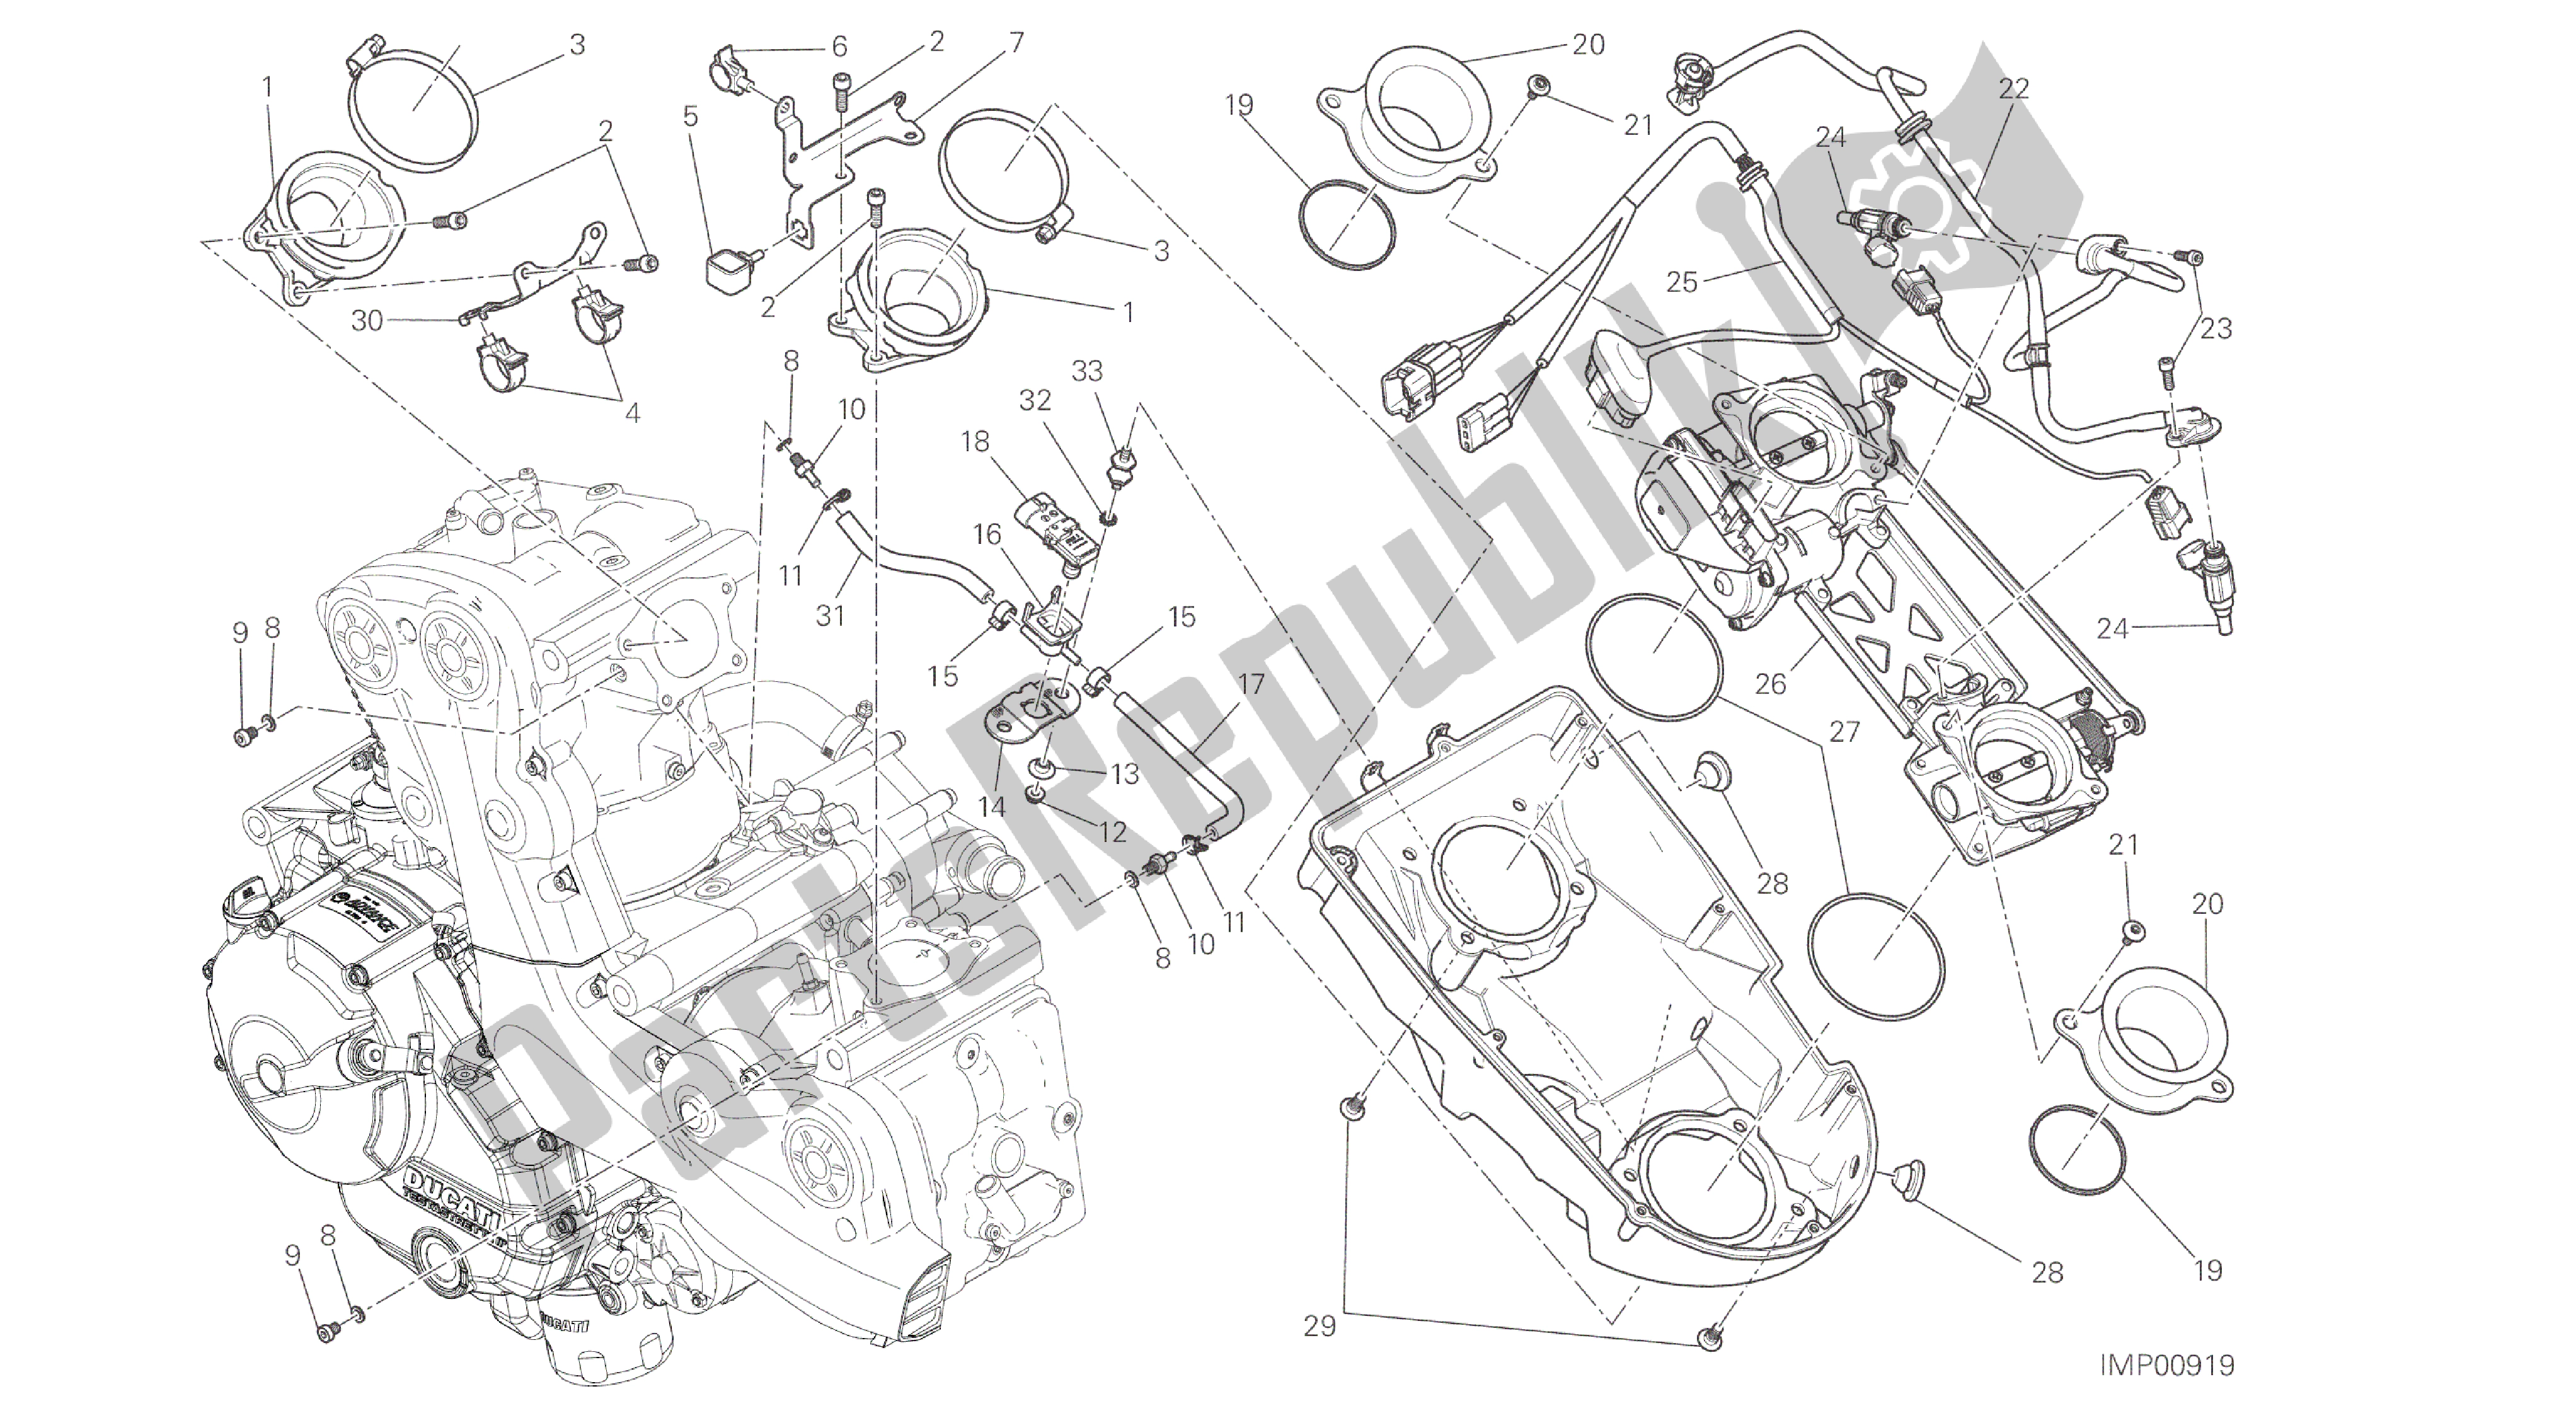 Todas las partes para Dibujo 017 - Cuerpo Del Acelerador [mod: M 821; Xst: Marco De Grupo Aus, Eur, Fra, Jap] de Ducati Monster 821 2014